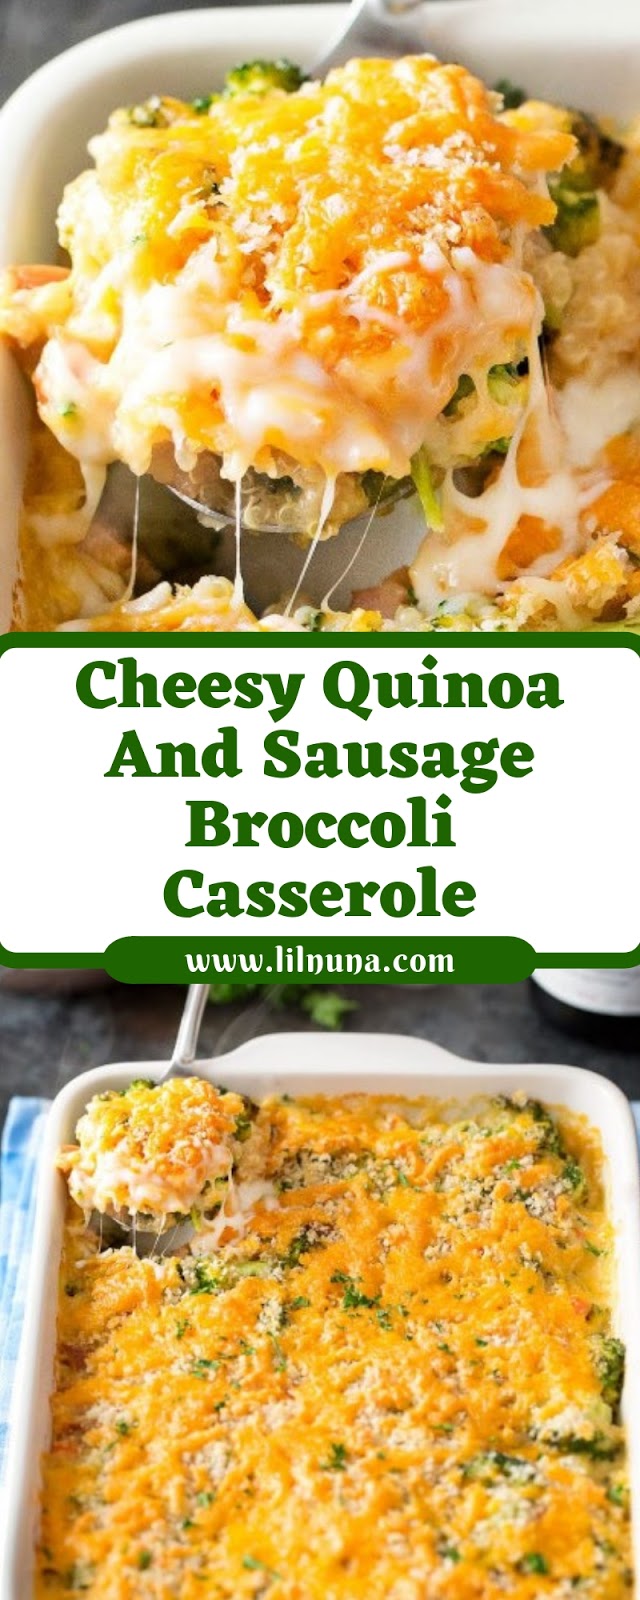 Cheesy Quinoa And Sausage Broccoli Casserole